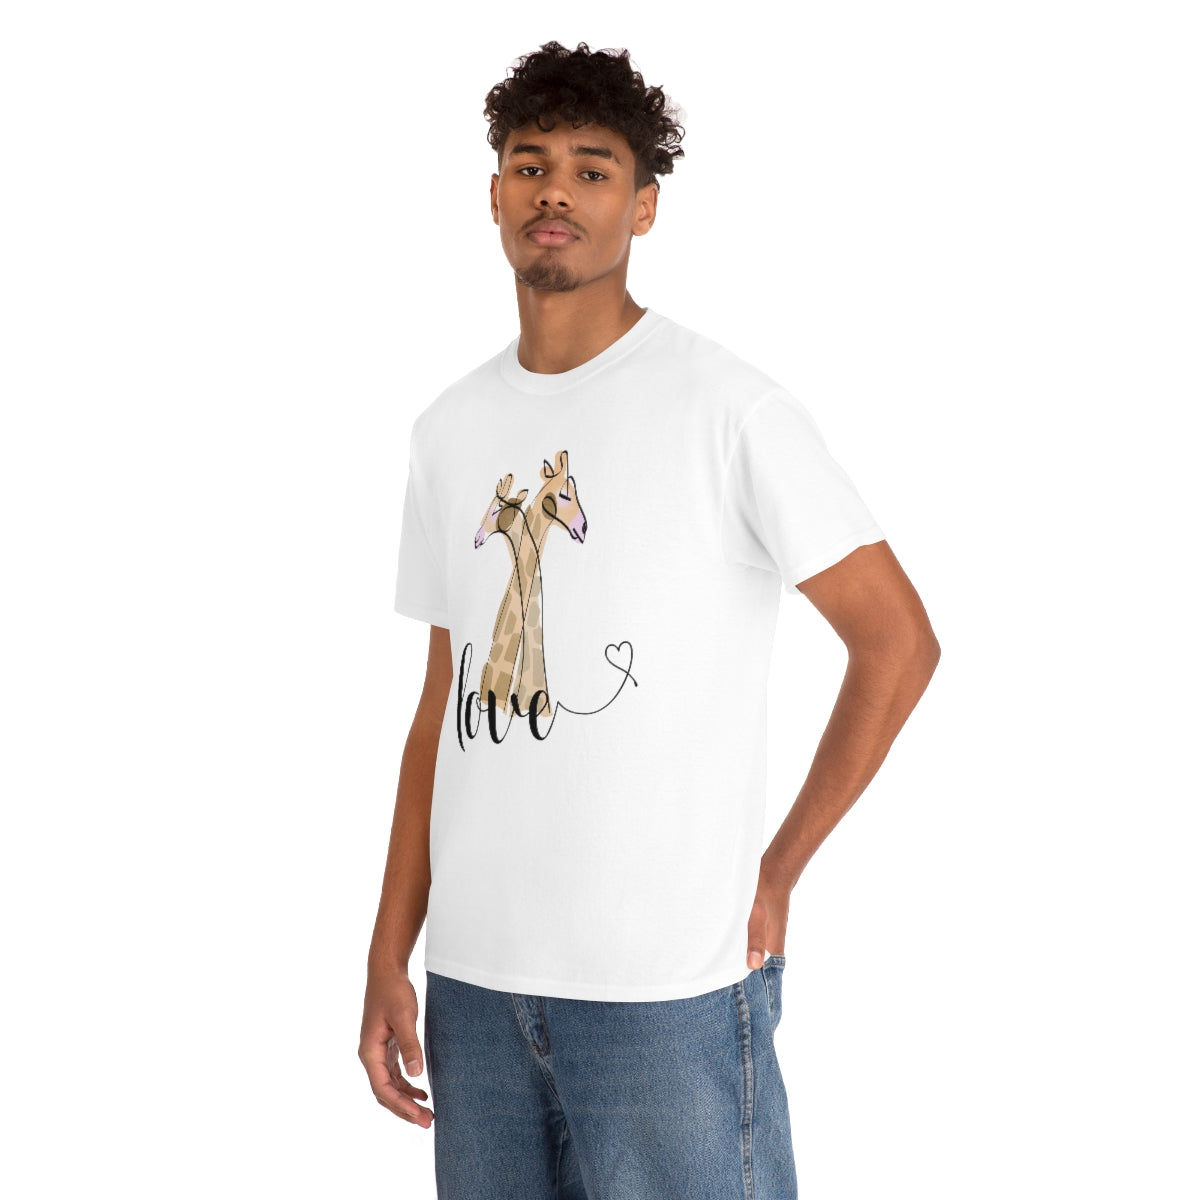 Love Giraffe Hugs white Tee shirt